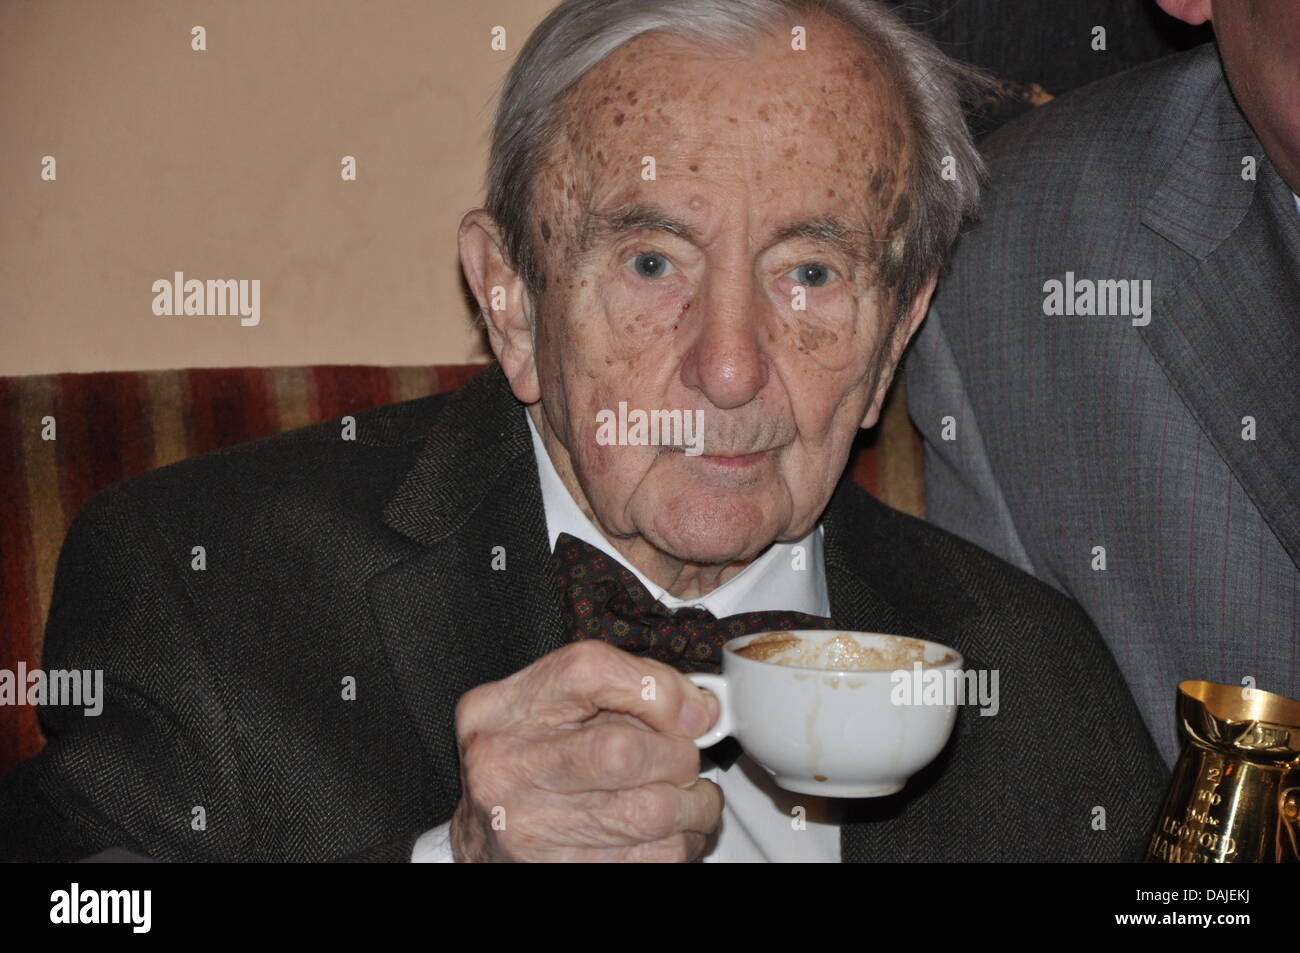 Leopoldo Hawelka beve una tazza di caffè nella sua casa di caffè 'Cafe Hawelka' a Vienna, Austria, 08 aprile 2011. Egli è la quintessenza della cultura del caffè a Vienna e celebrerà il suo centesimo compleanno il 11 aprile. Foto: Irmgard Rieger Foto Stock